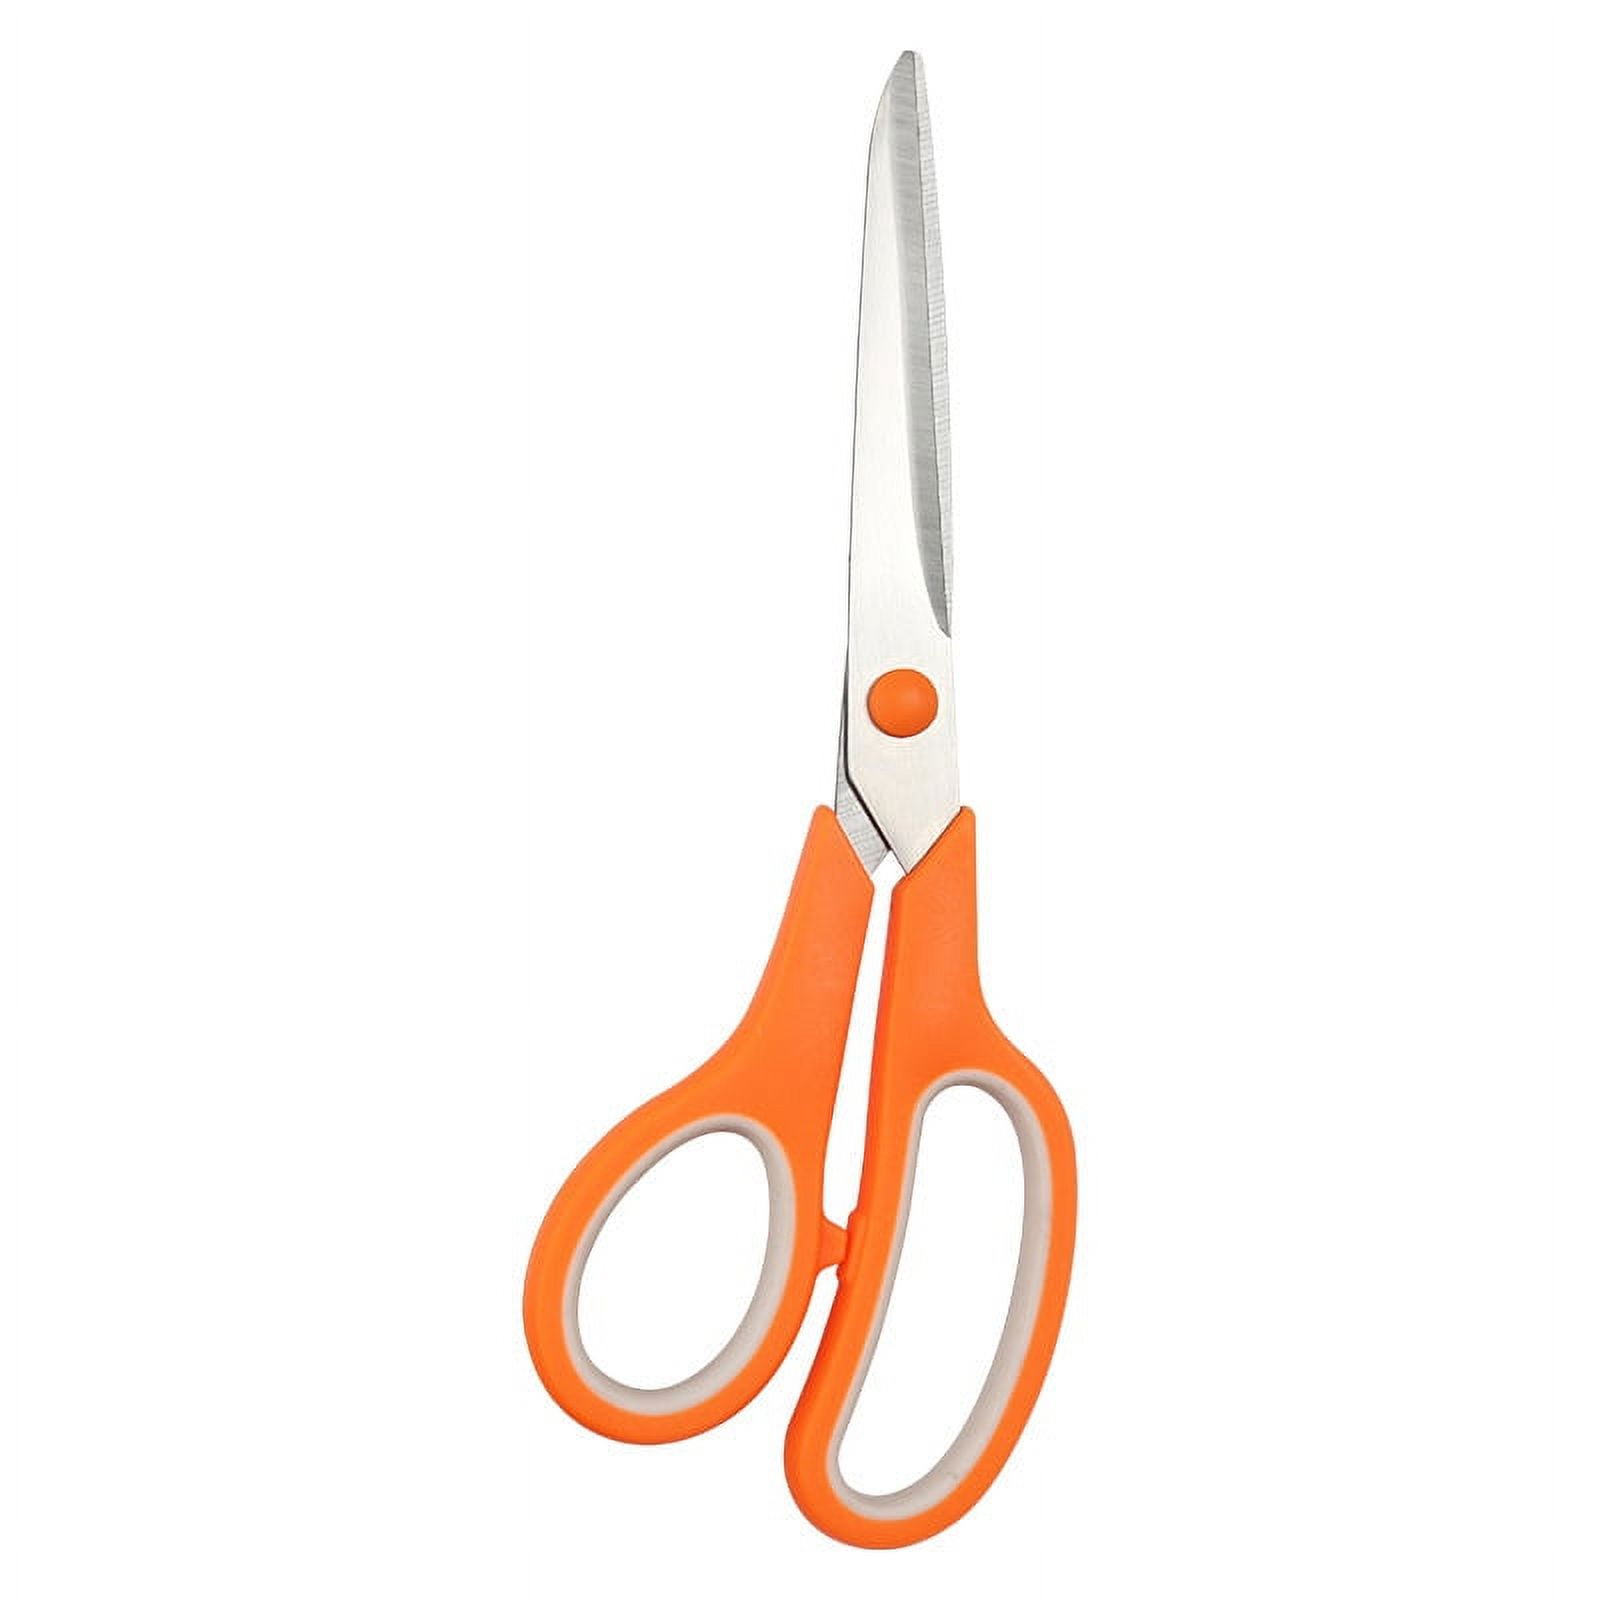 Scissors 8 Multipurpose Scissors Titanium Coated Sturdy Sharp Scissors  Right/Left Handed Comfort-Grip Handles(3-Pack) 